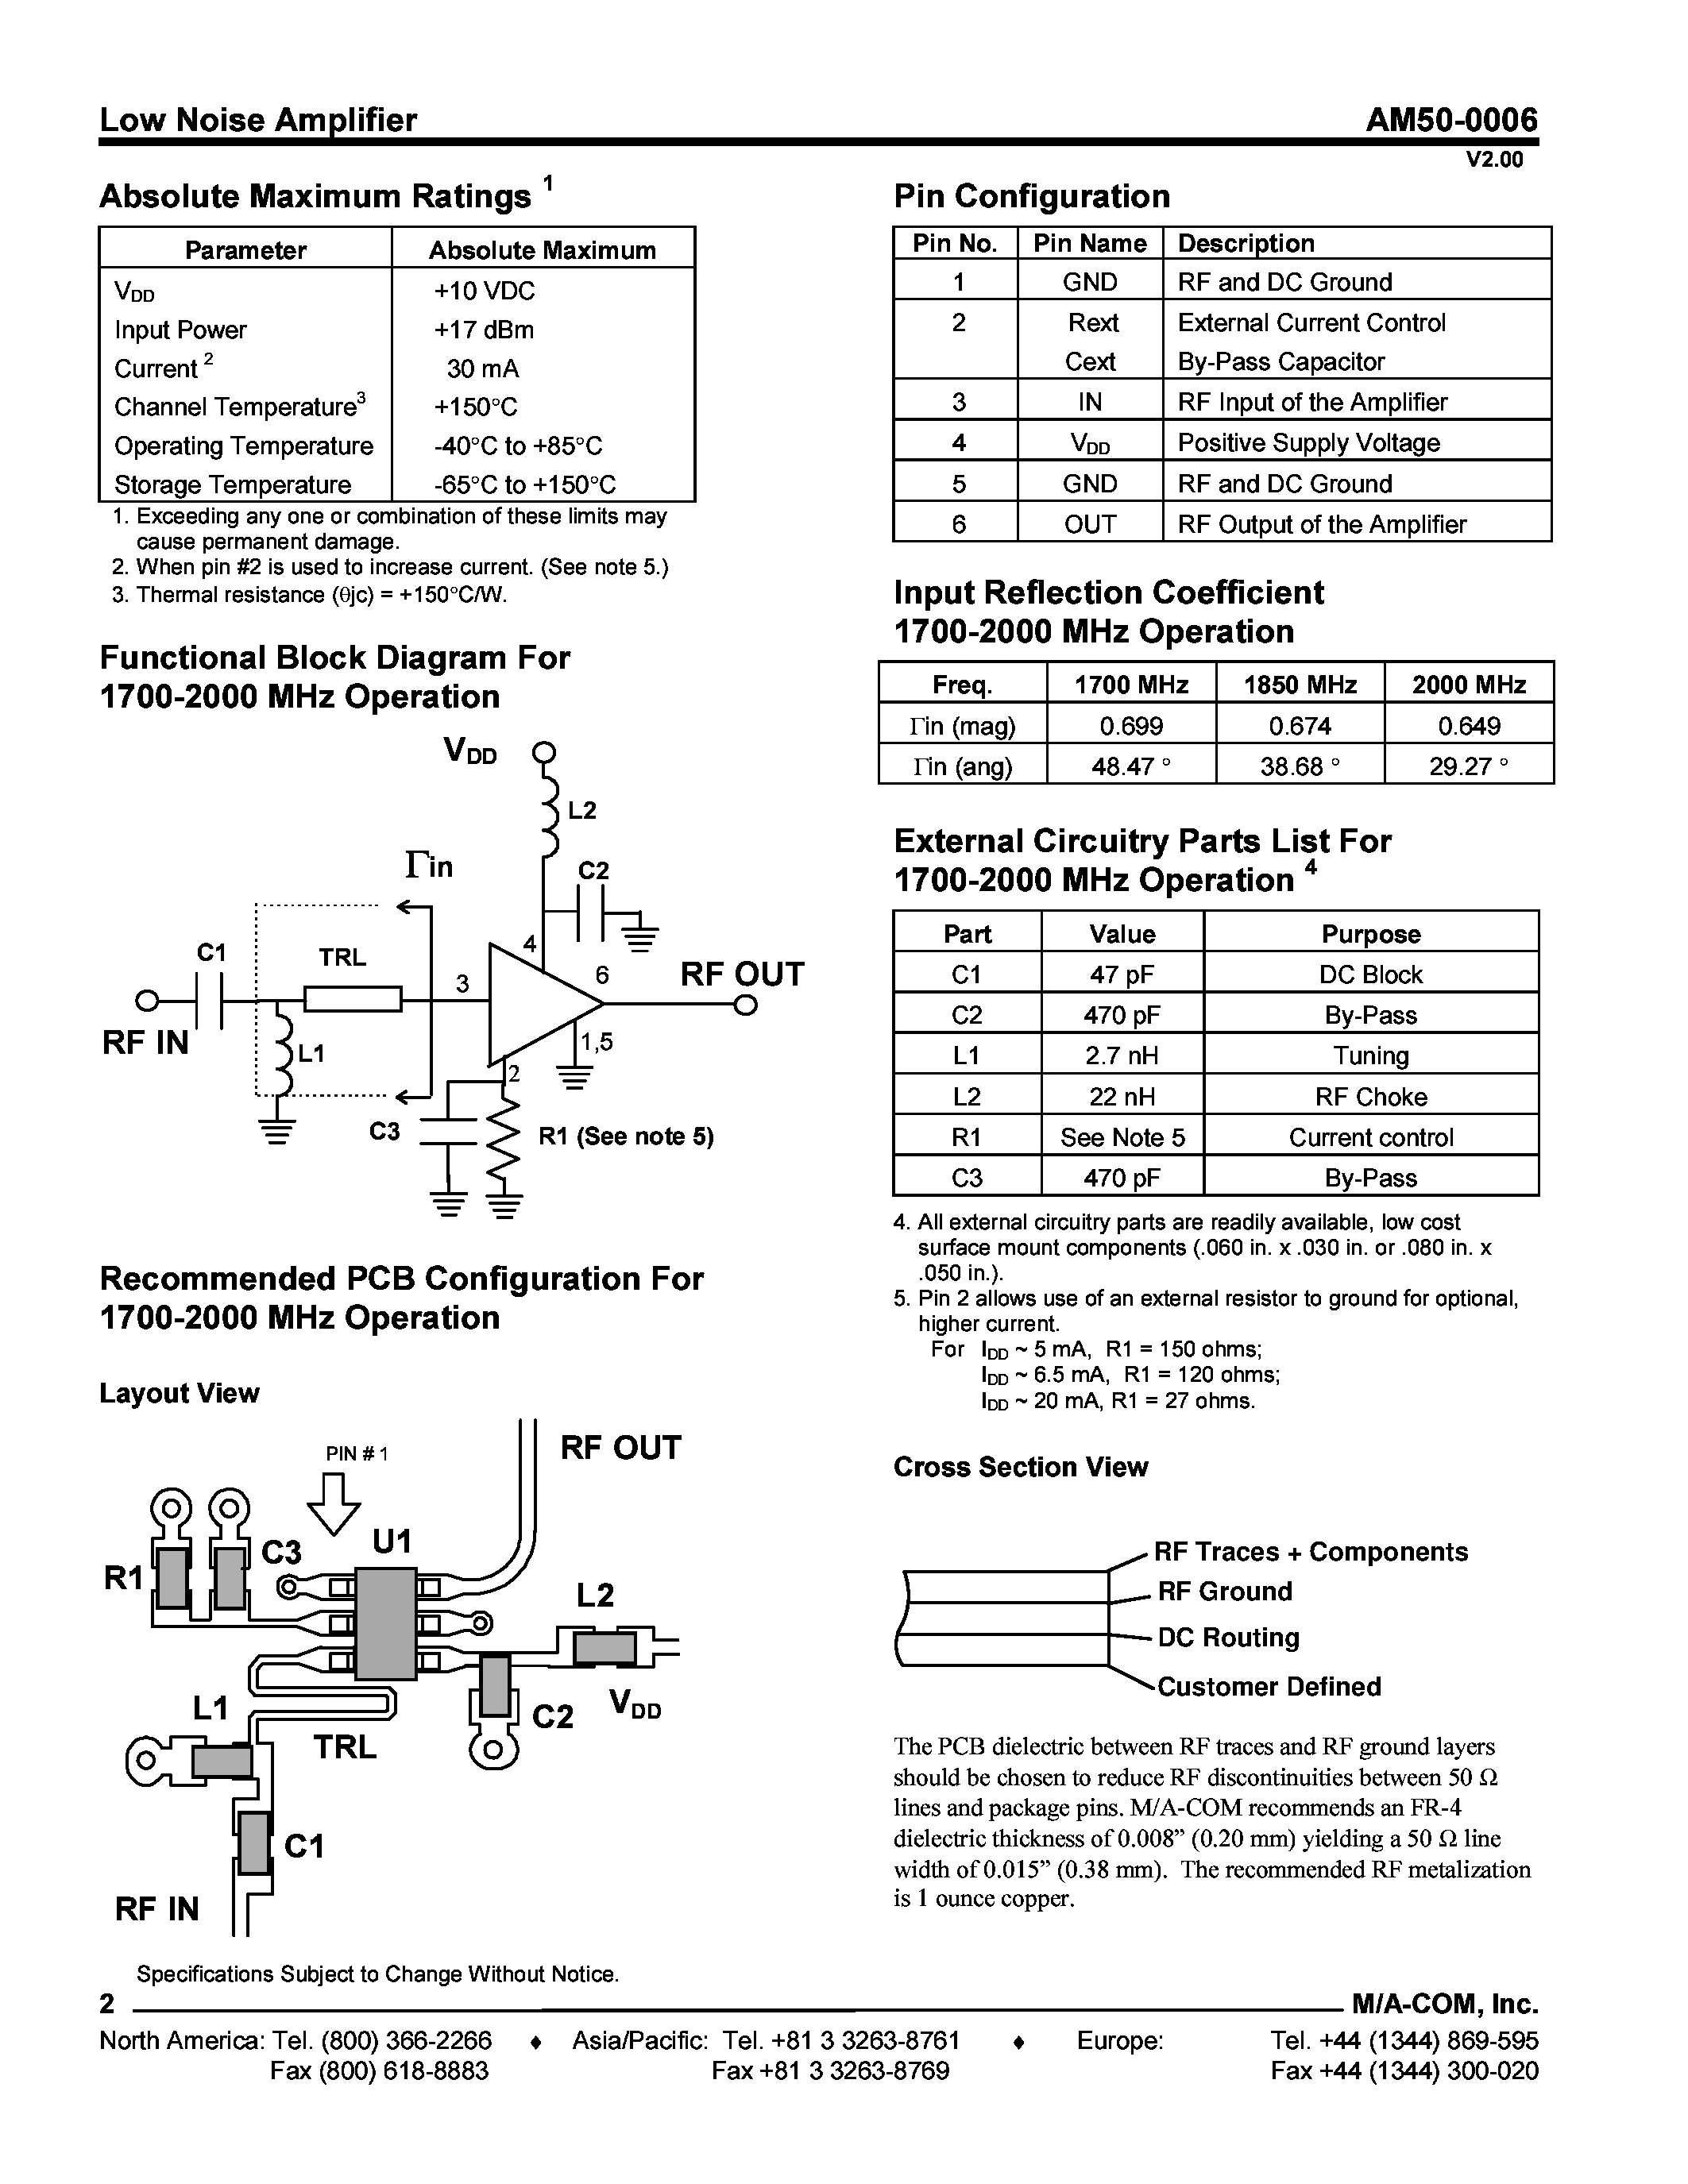 Datasheet AM50-0006PCS - Low Noise Amplifier 1400 - 2000 MHz page 2